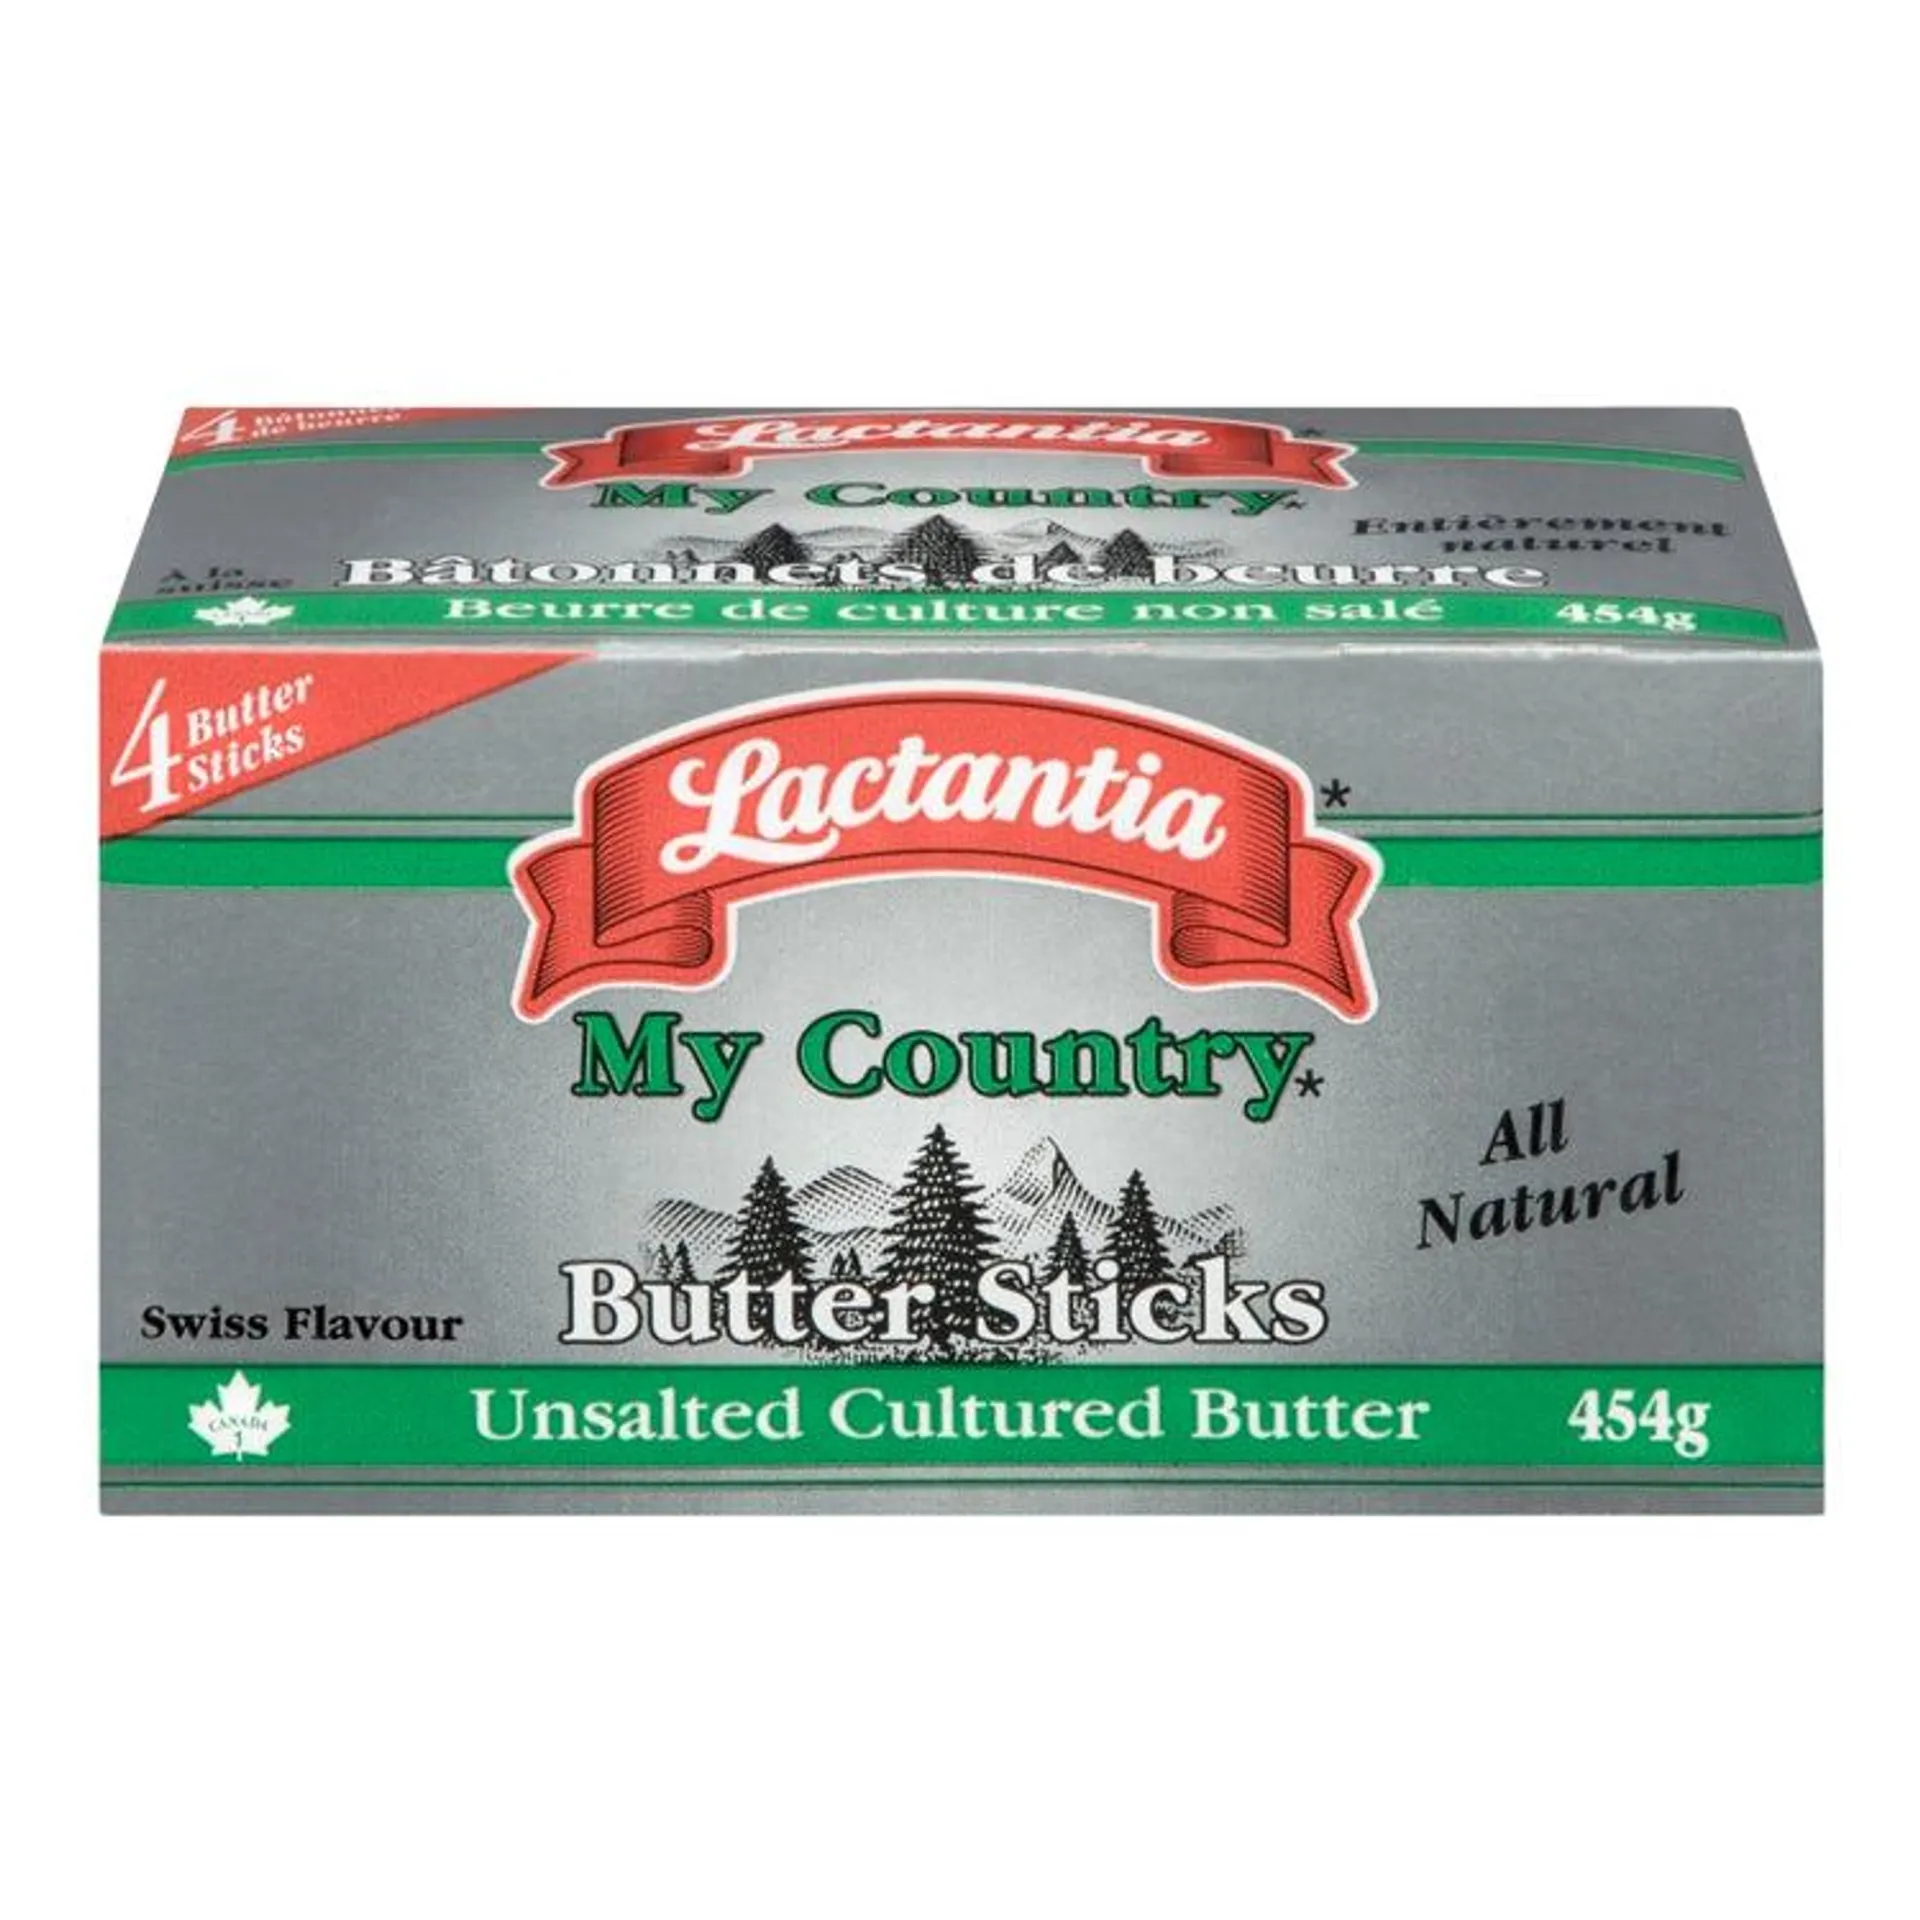 Lactantia Unsalted Butter Sticks - 4x113 g